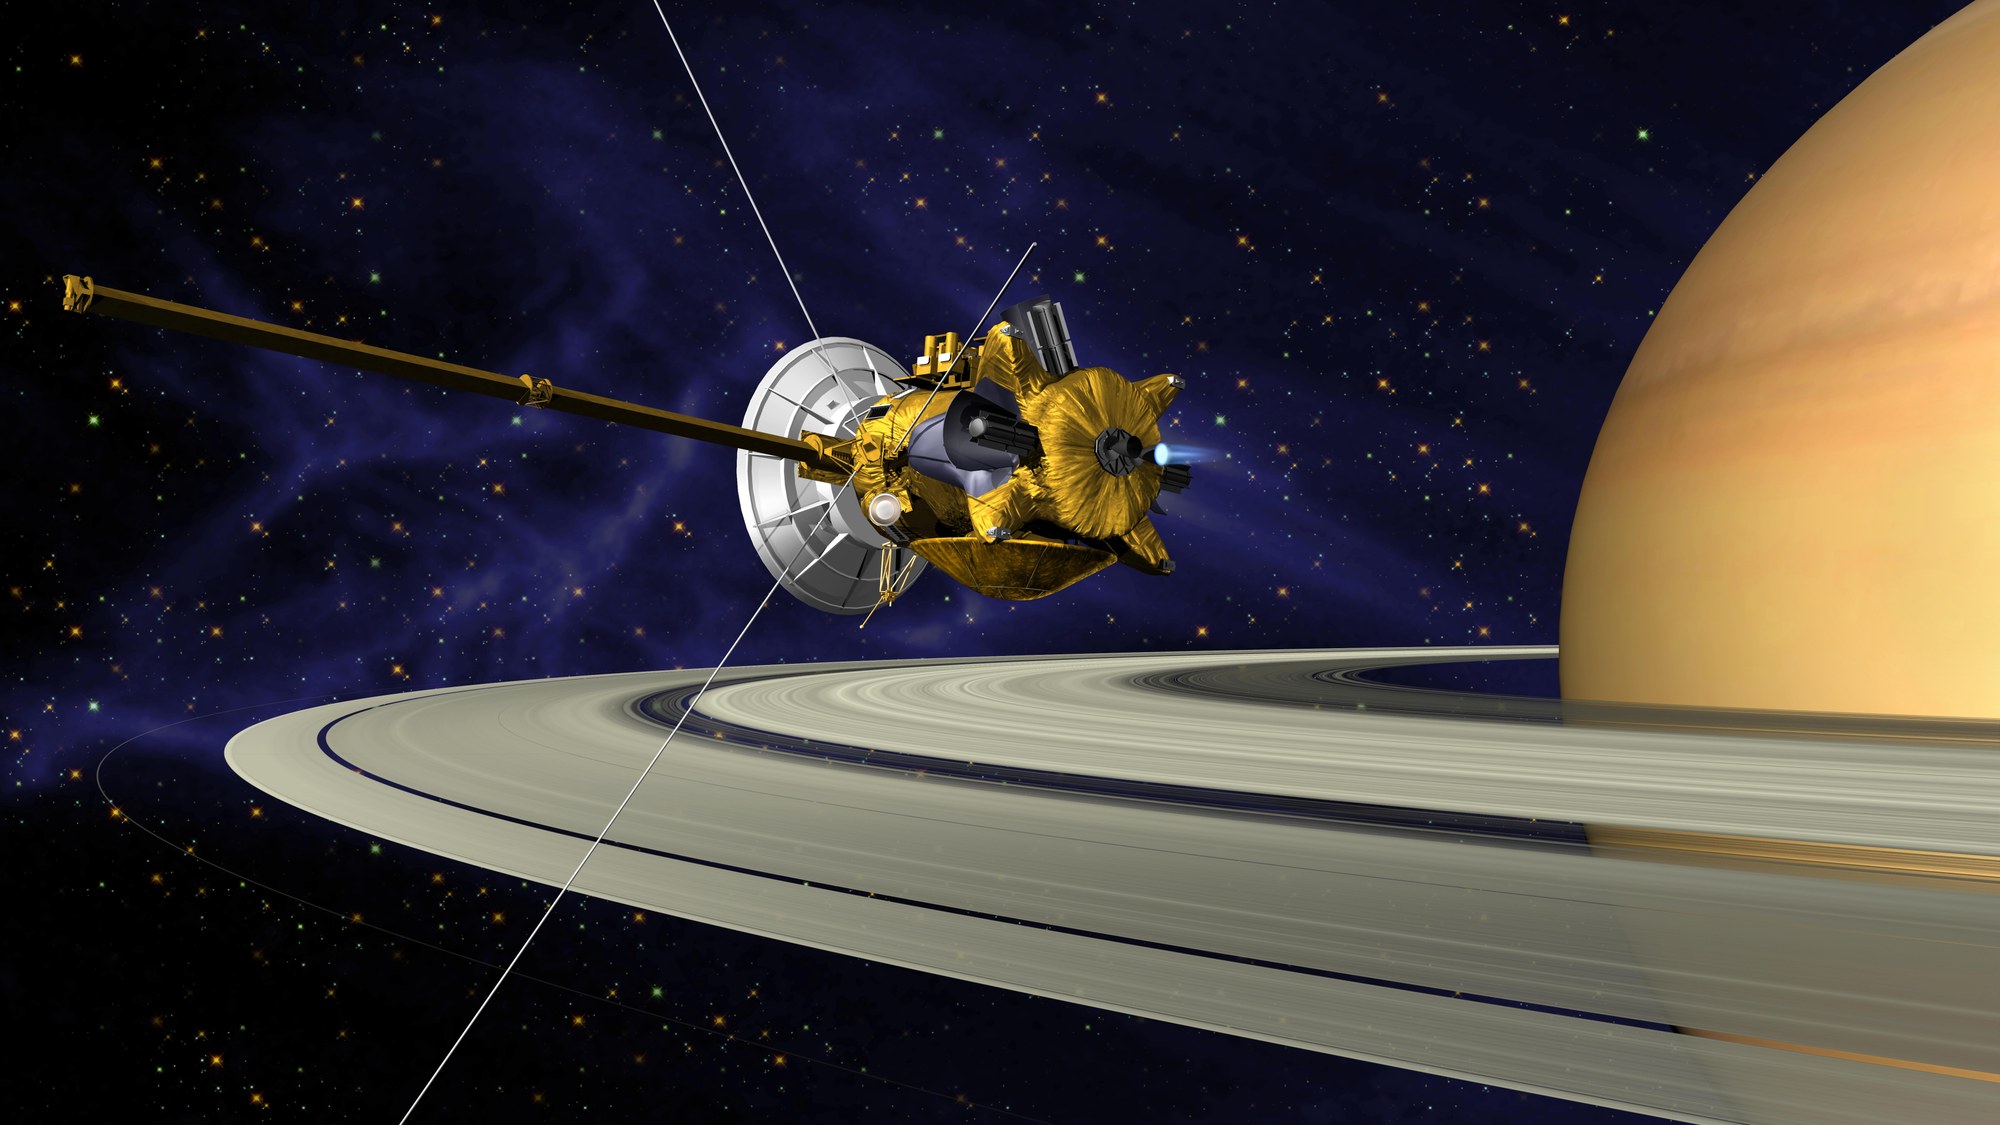 Artist's impression of the Cassini spacecraft in orbit around Saturn.